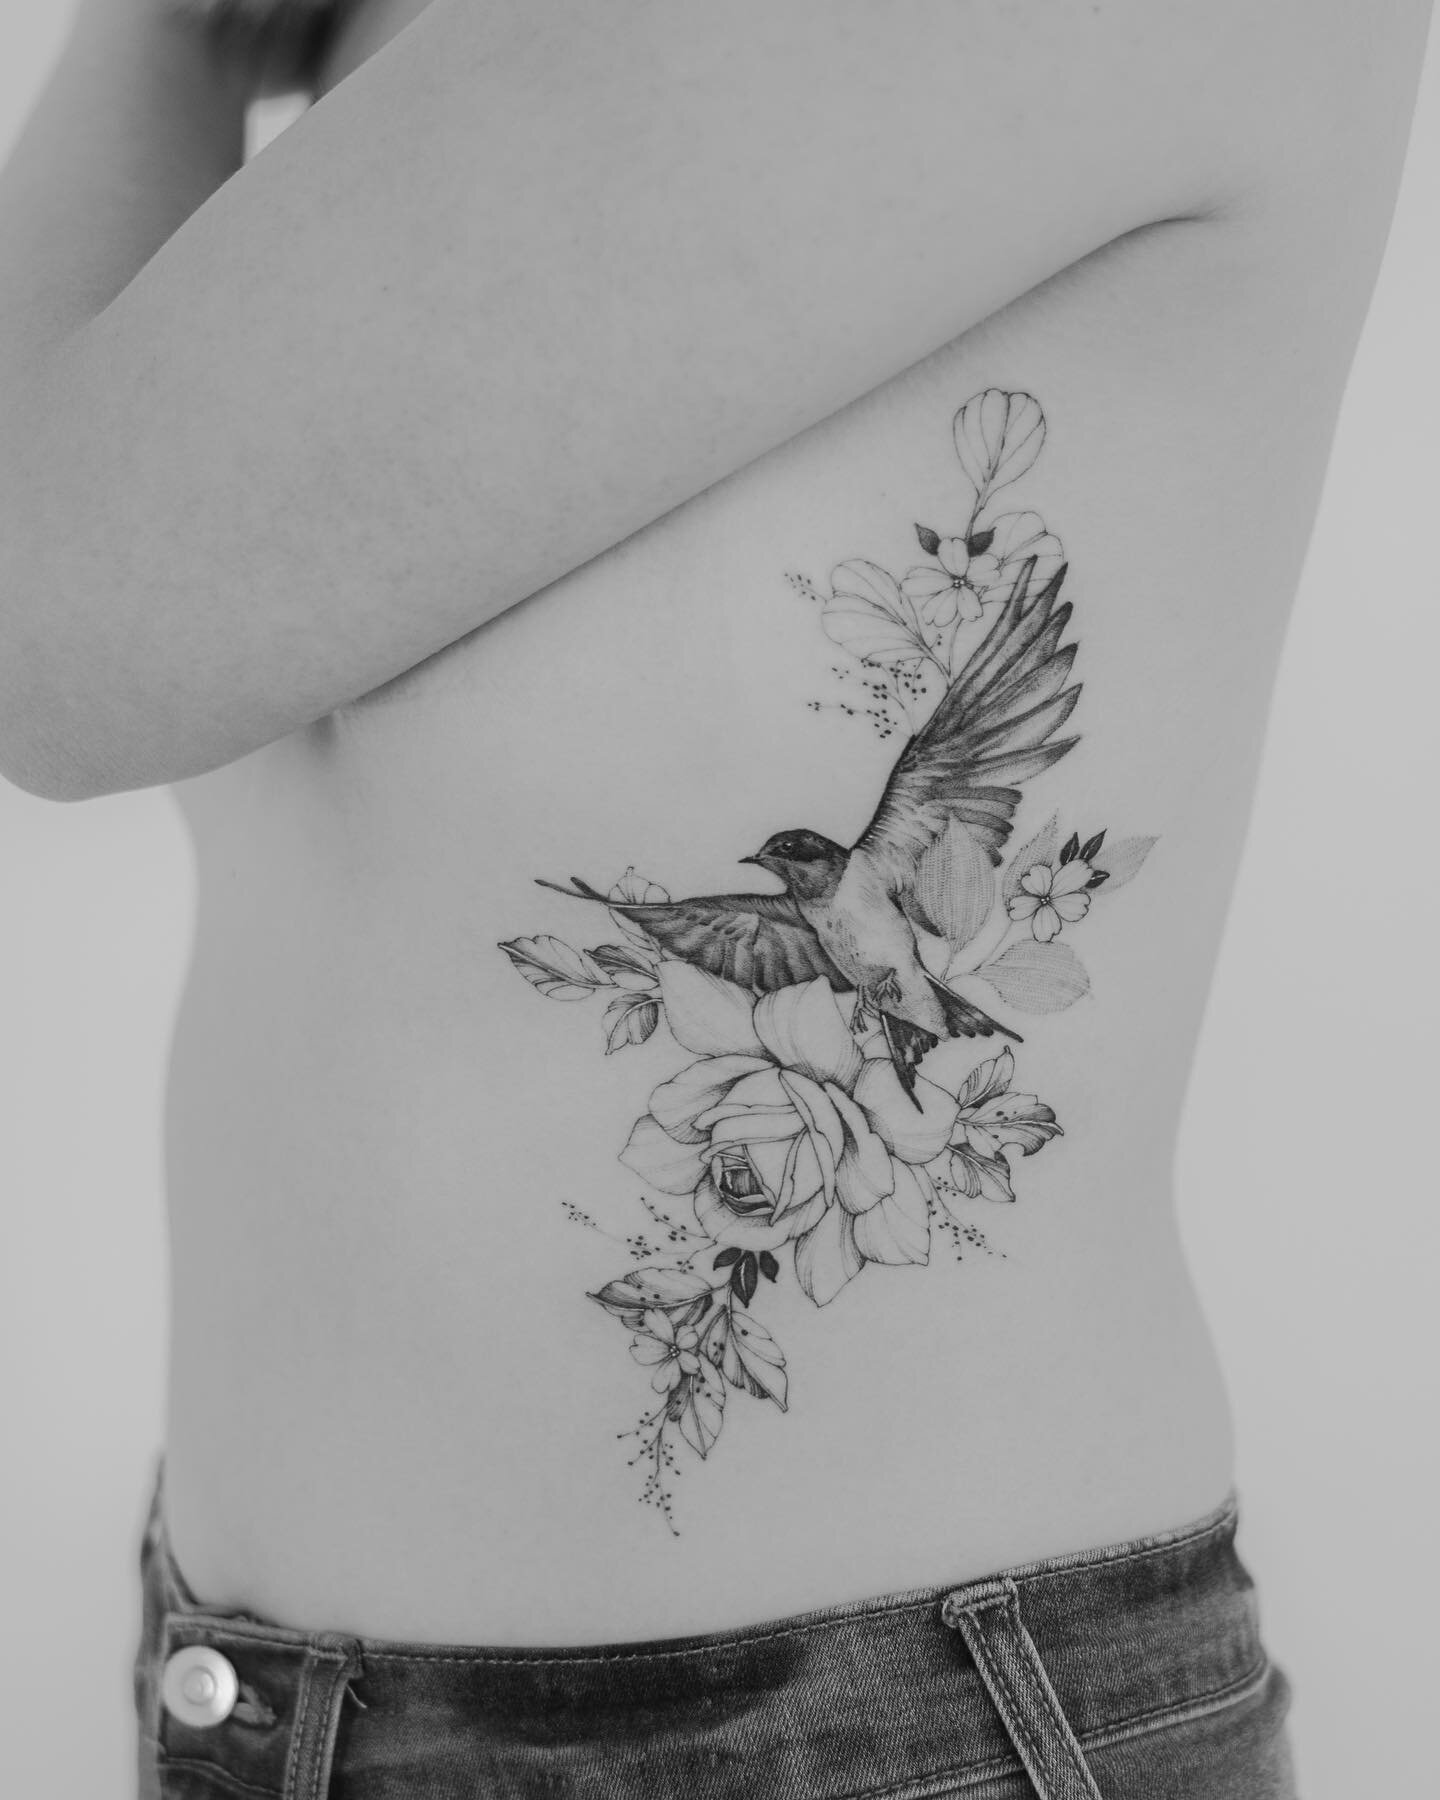 For Natalie 🐦
.
.
.
.
.

 #tattoo #tattoos #finelinetattoos #frehandtattoo #tattoartist #finelinetattoo #fineline #torontotattoo #torontotattoos #torontotattooartist #floral #floraltattoos #flower tattoo #montrealtattoo #peony #peonytattoo #rose #ro